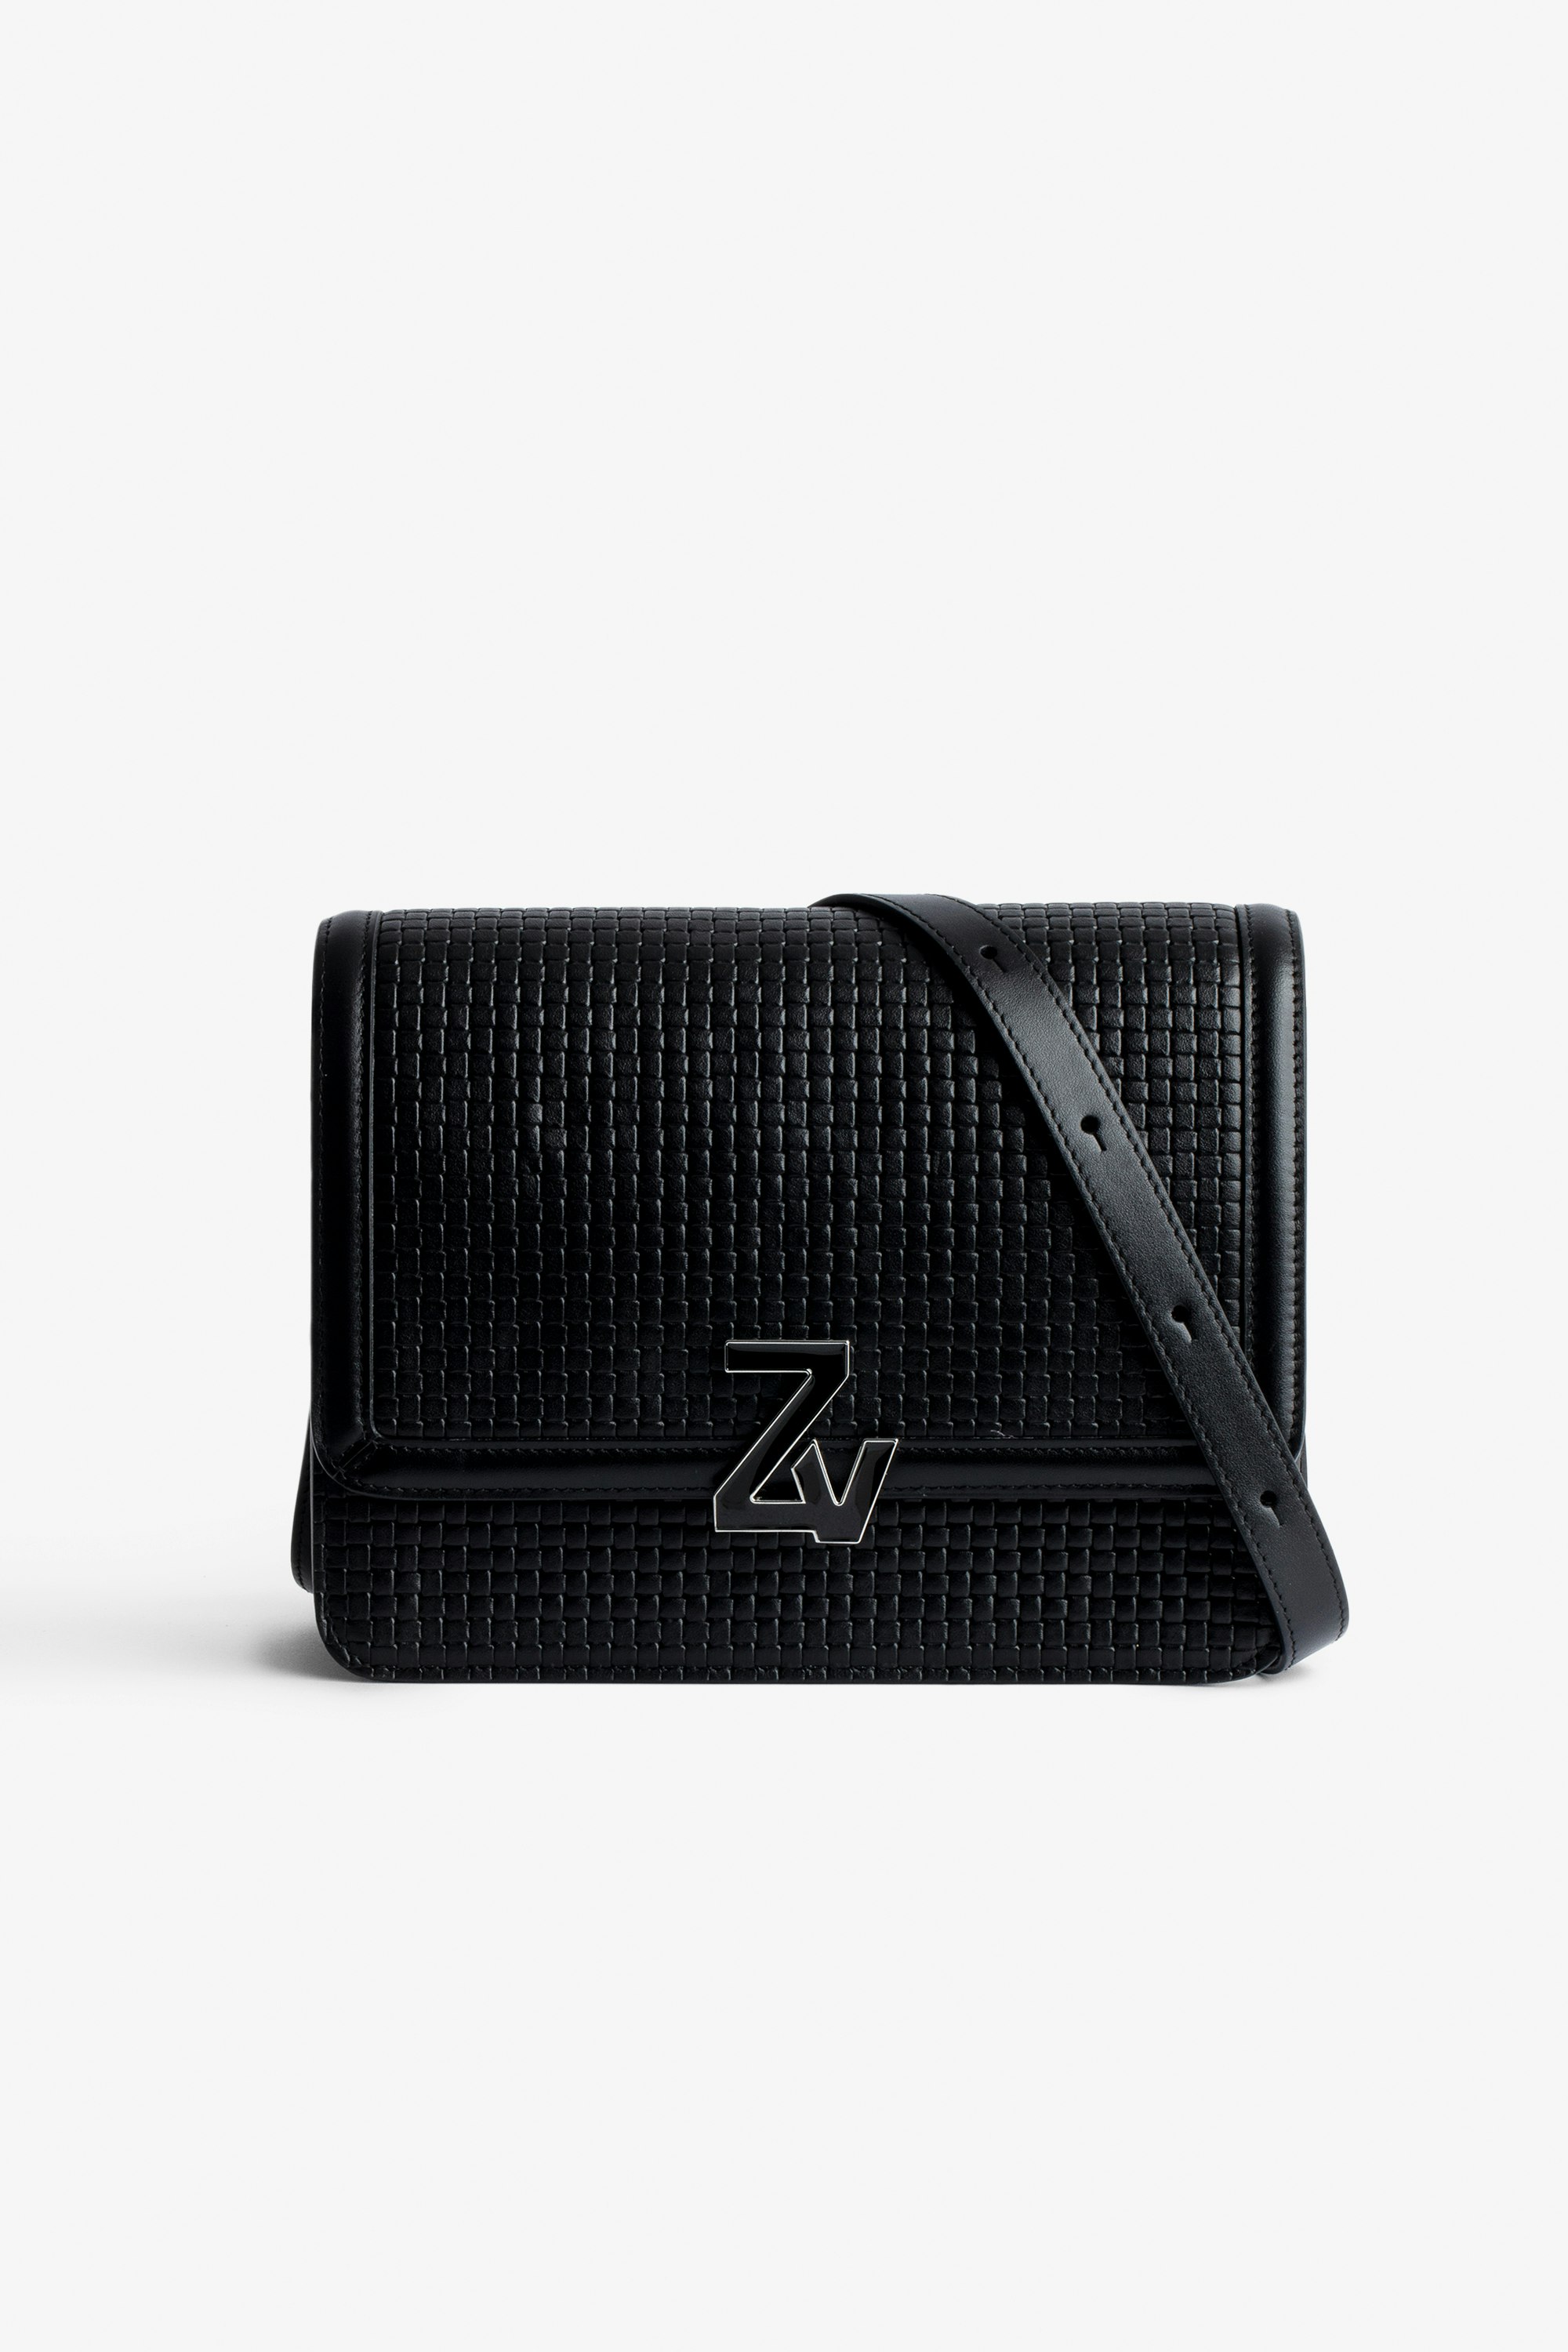 Tasche ZV Initiale Le City Schwarze Damen-Handtasche aus geflochtenem Leder mit Schulterriemen mit ZV-Schließe